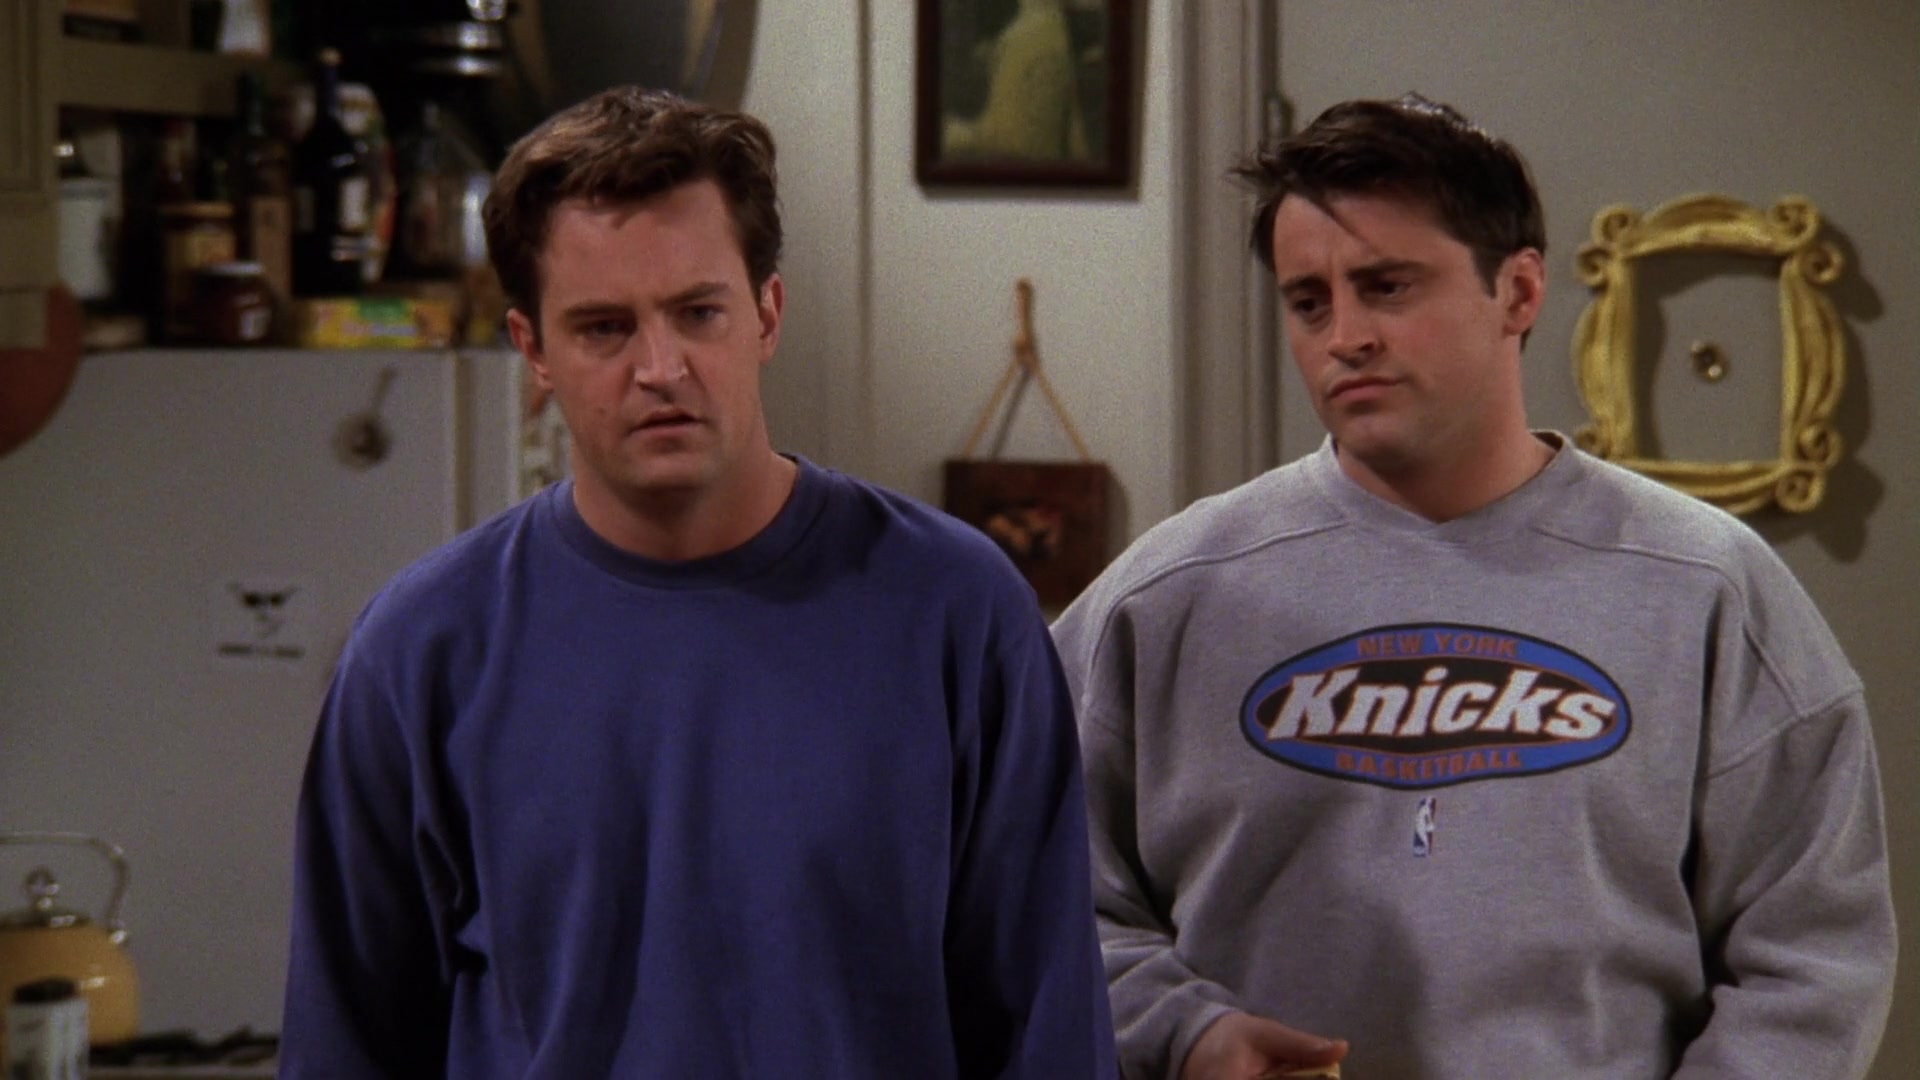 Jersey Knicks Joey Tribianni (Matt Leblanc) in Friends S07E01